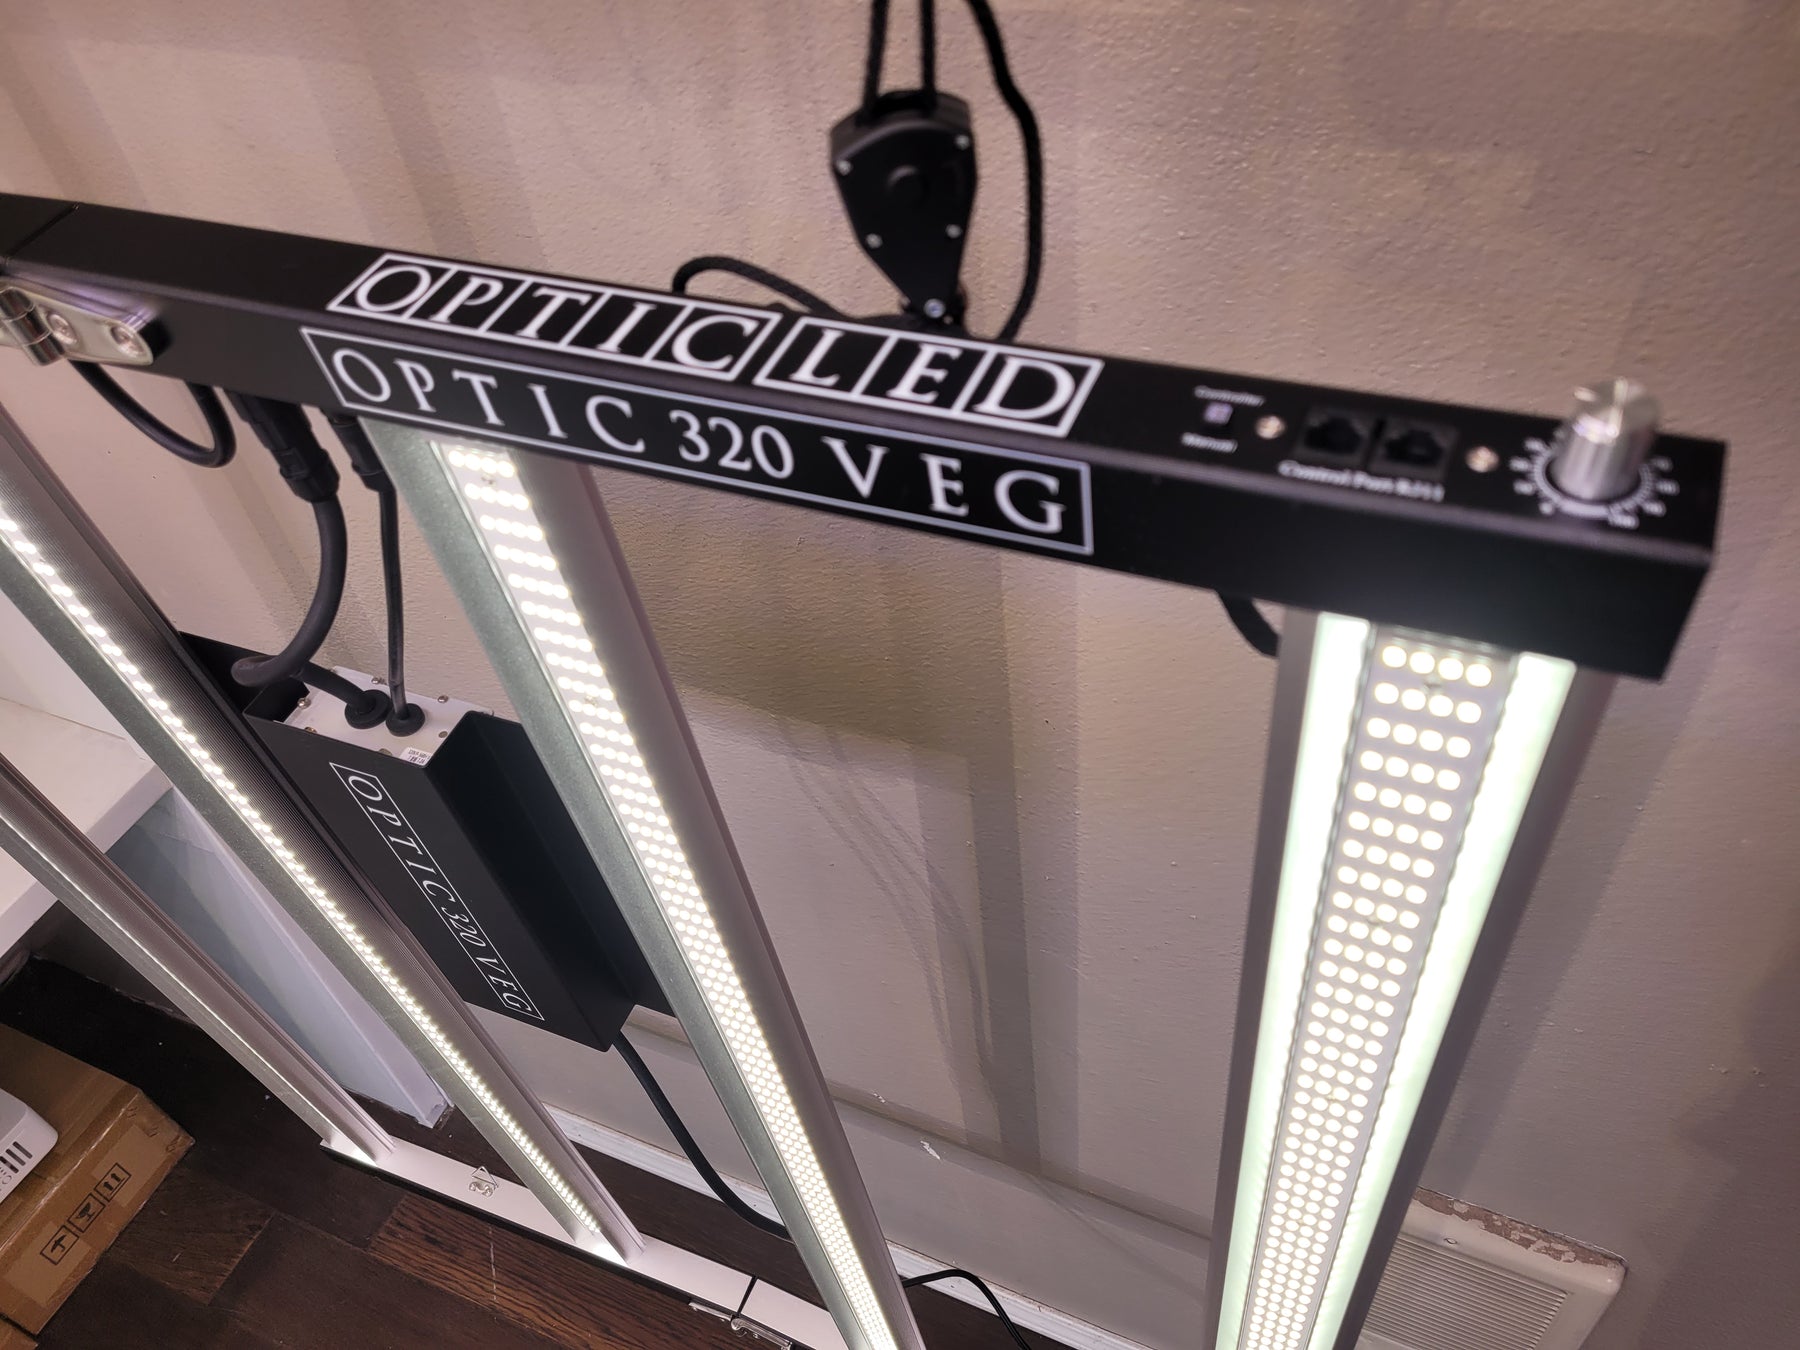 New! Optic 320 VEG - World's Longest lasting VEG Light